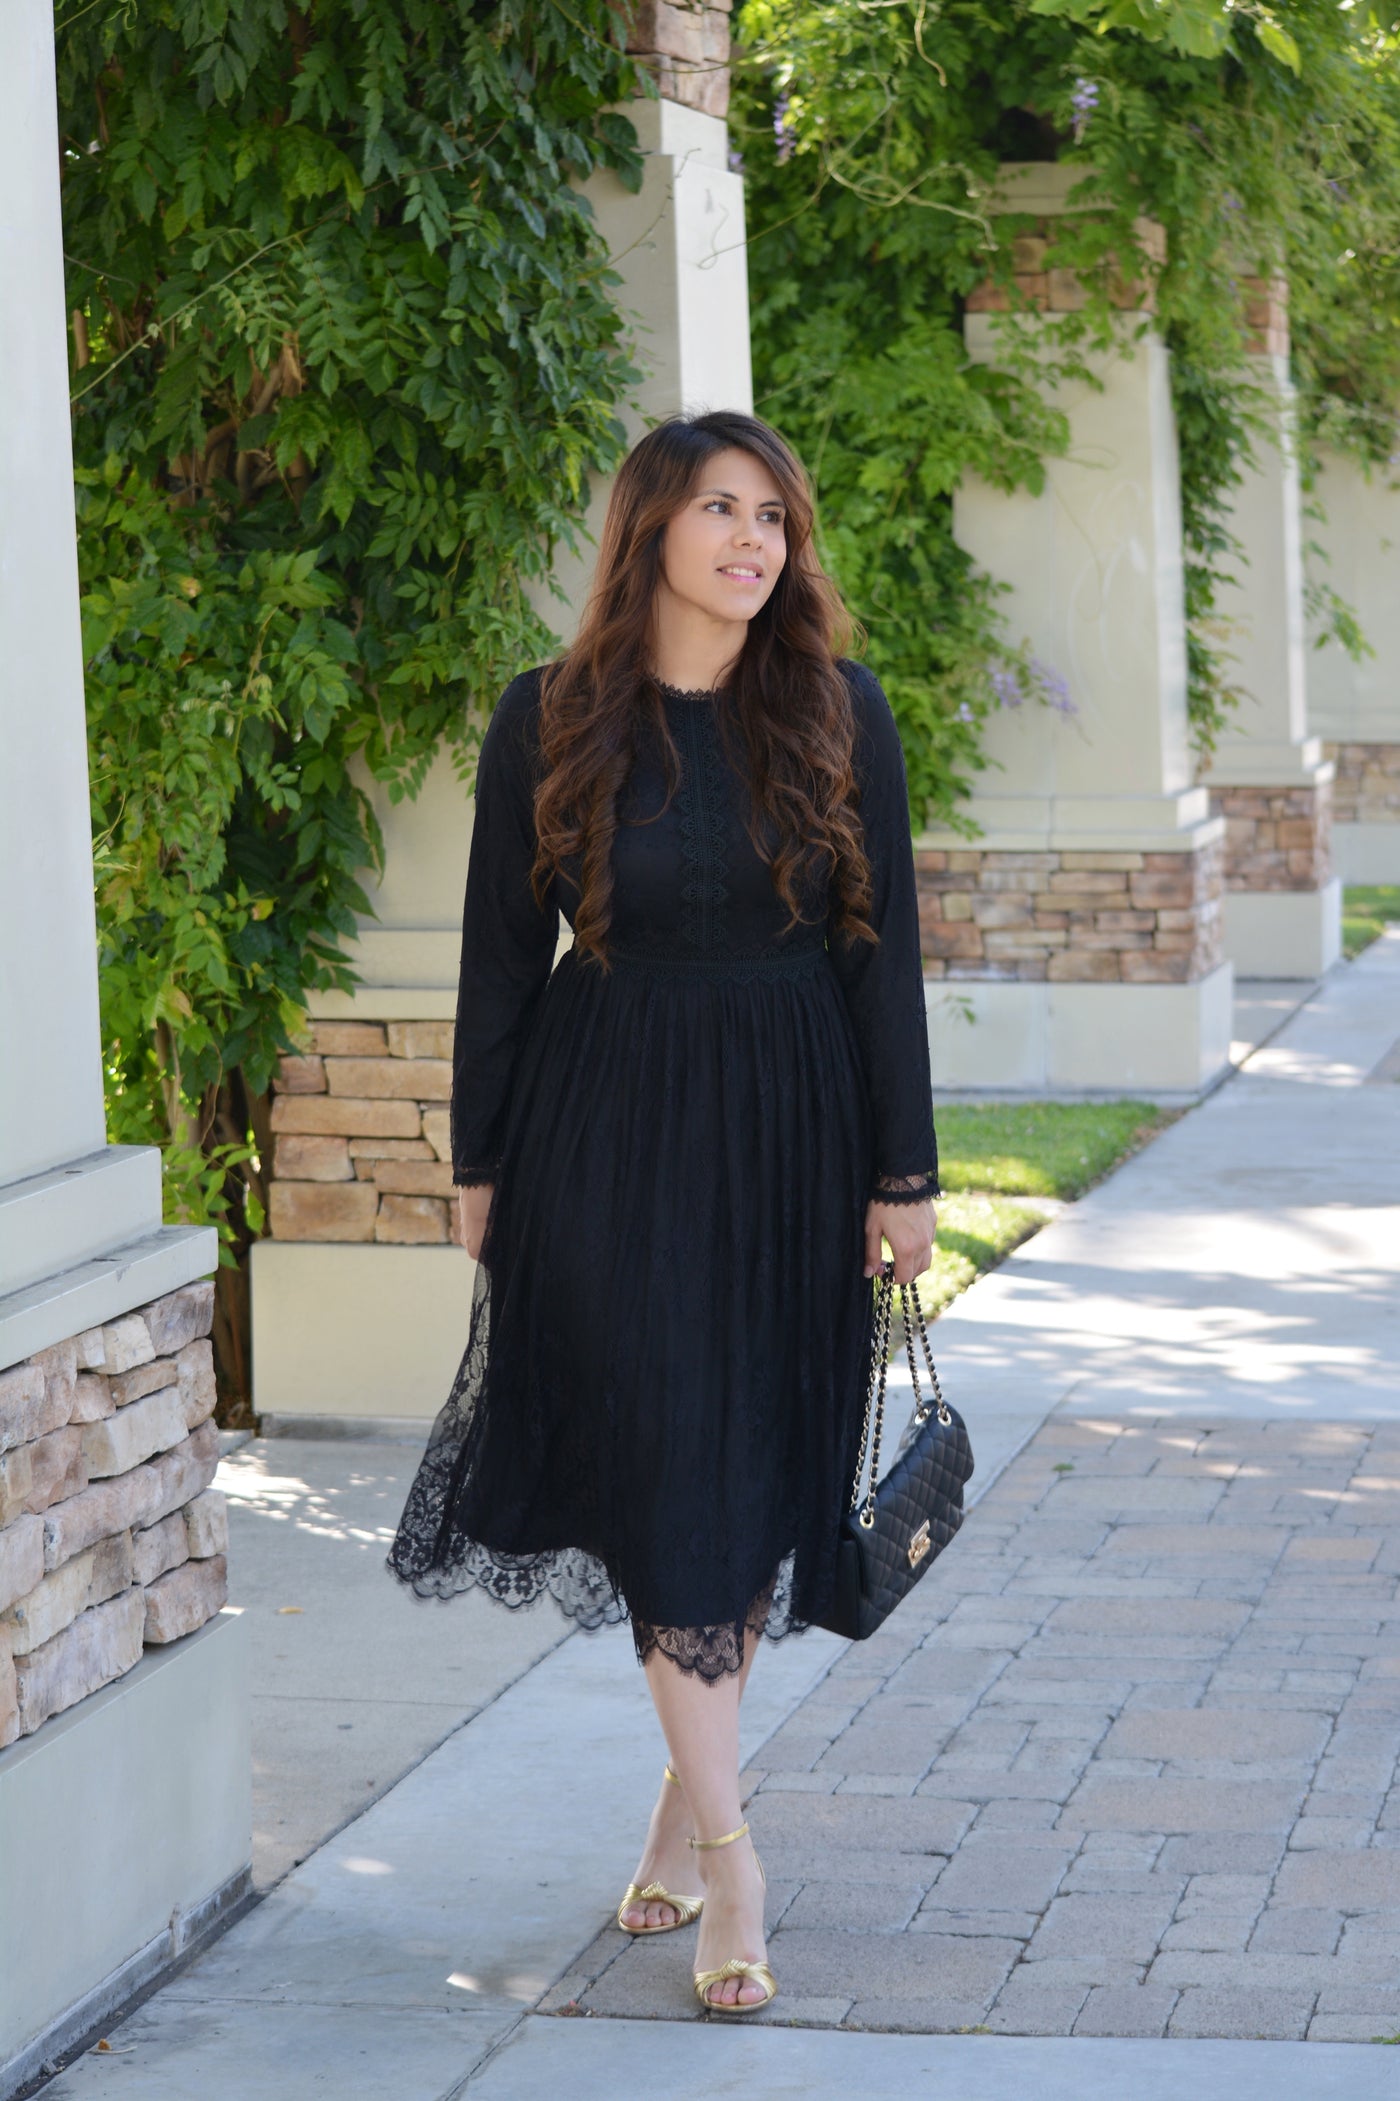 black lace dress outfit ideas